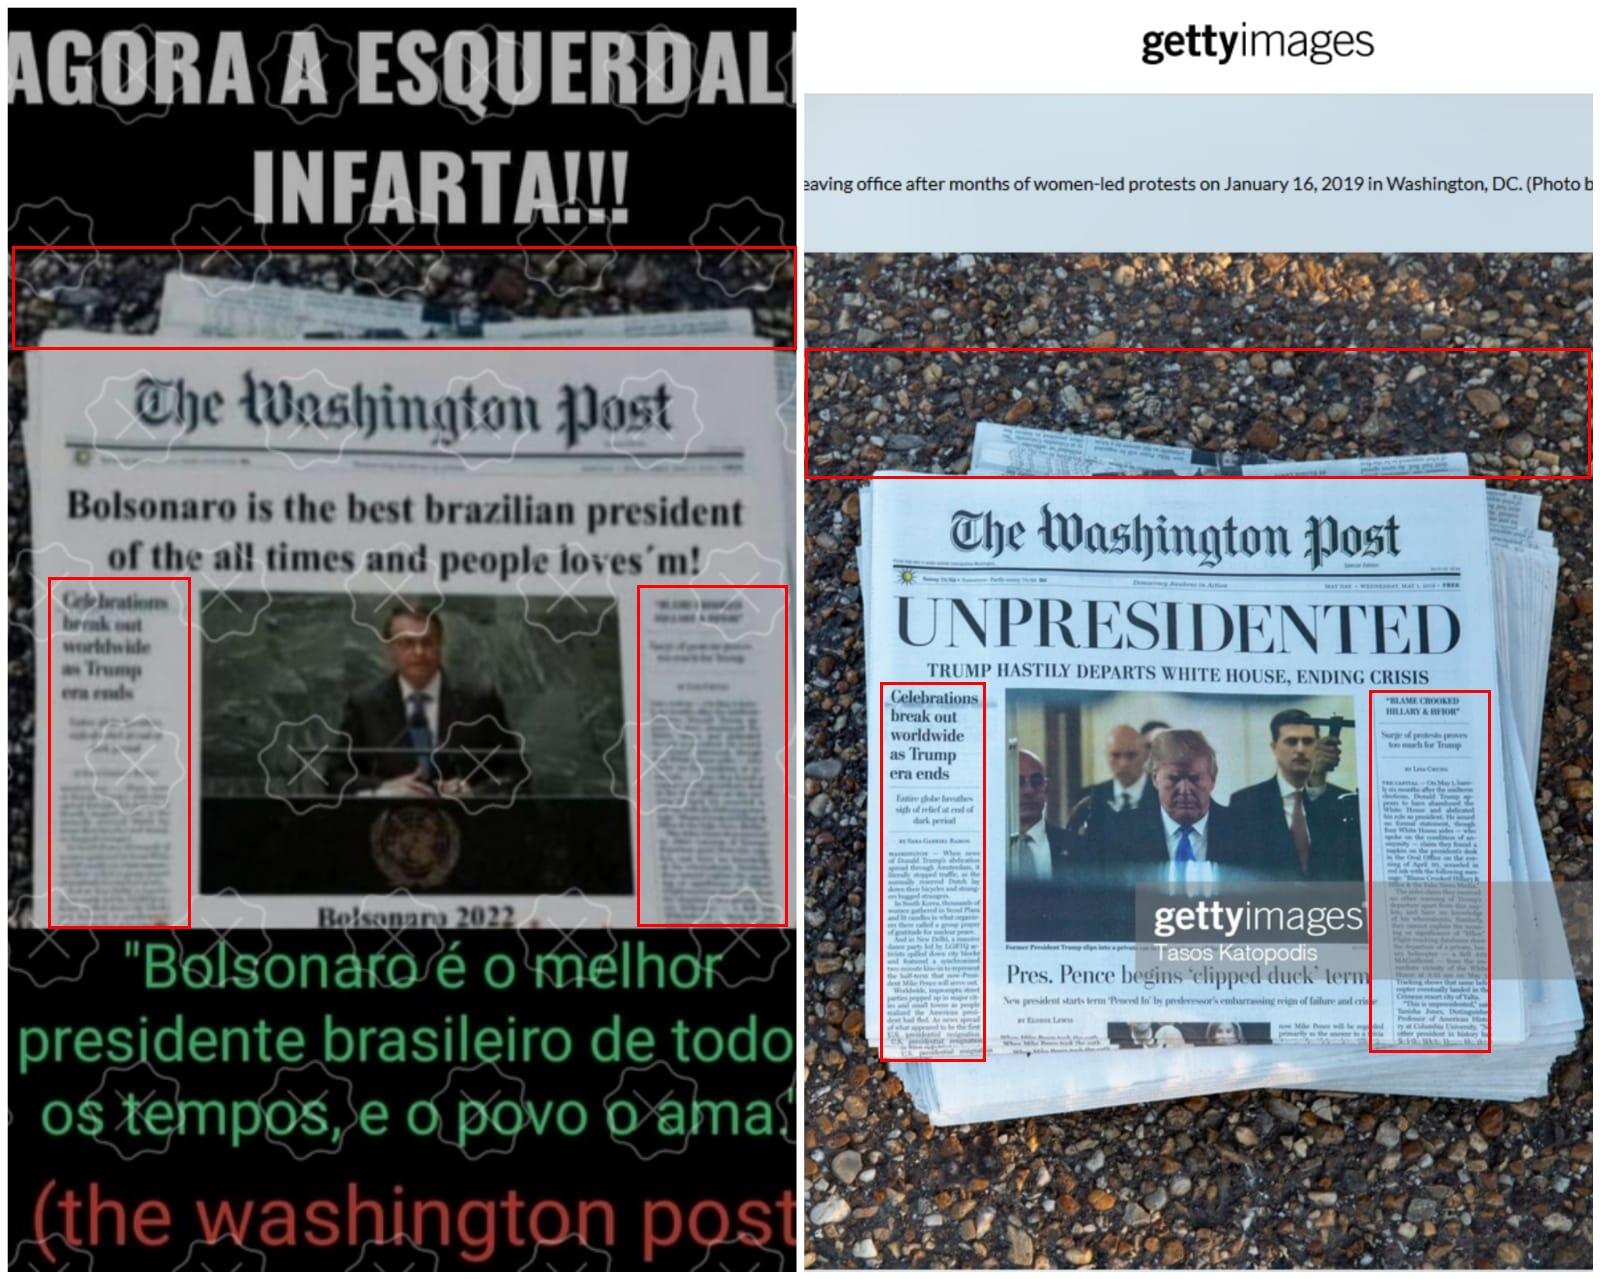 Capa falsa do Washington Post com Bolsonaro do lado esquerdo. Na direita, capa original com Trump